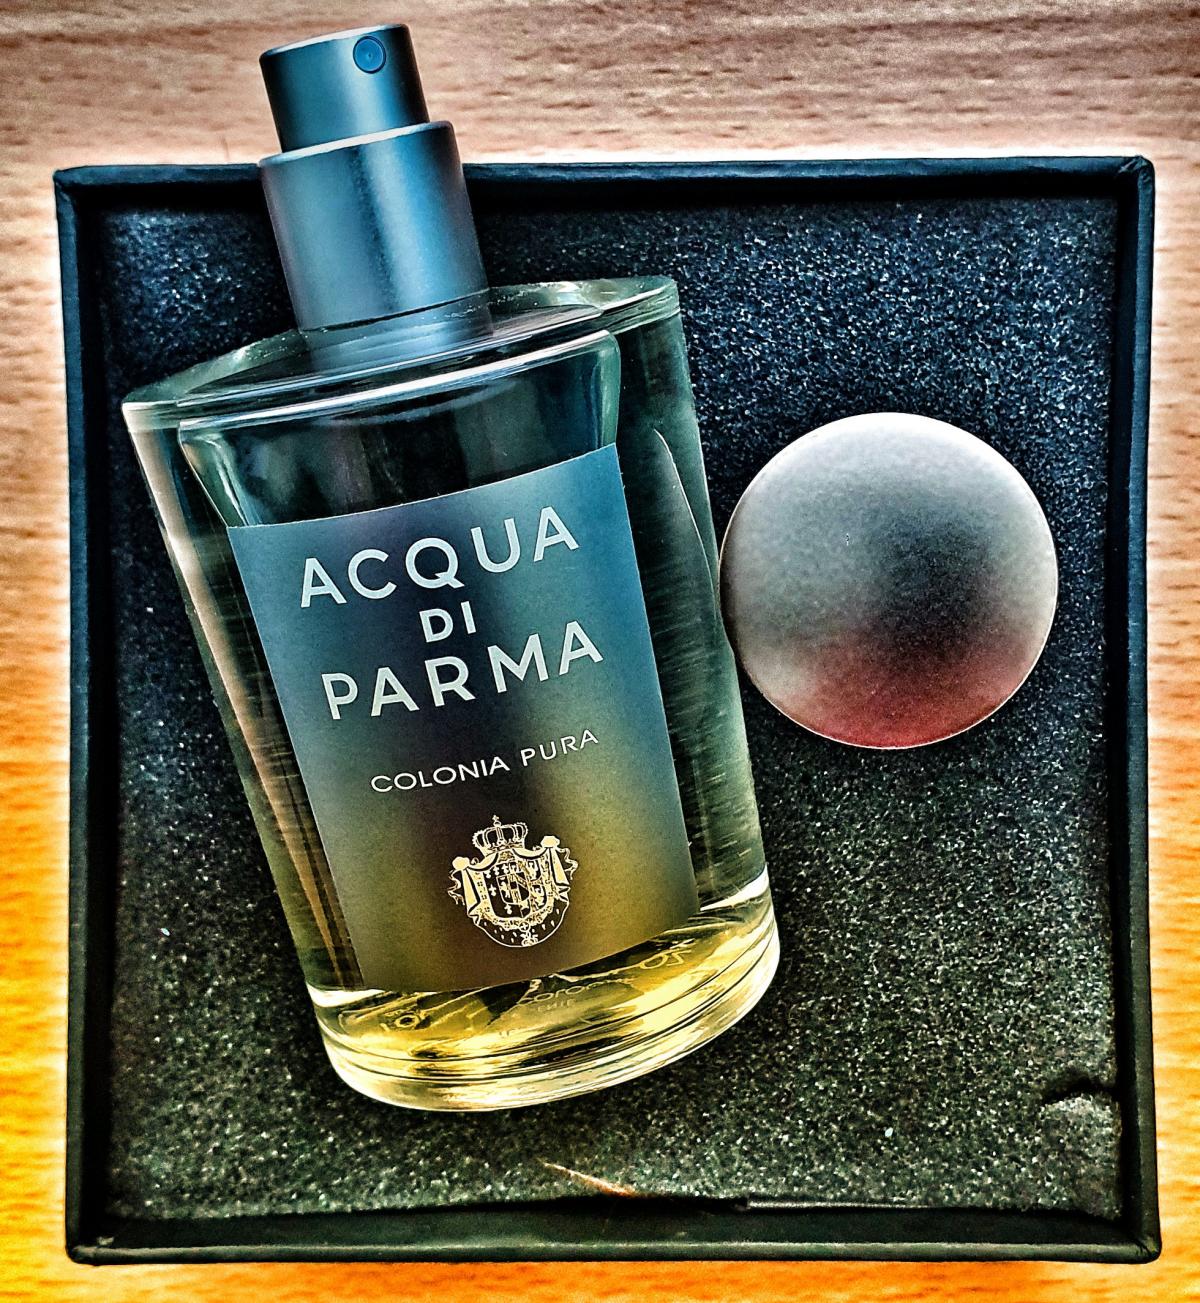 Acqua di Parma Colonia Pura Acqua di Parma perfume - a fragrance for